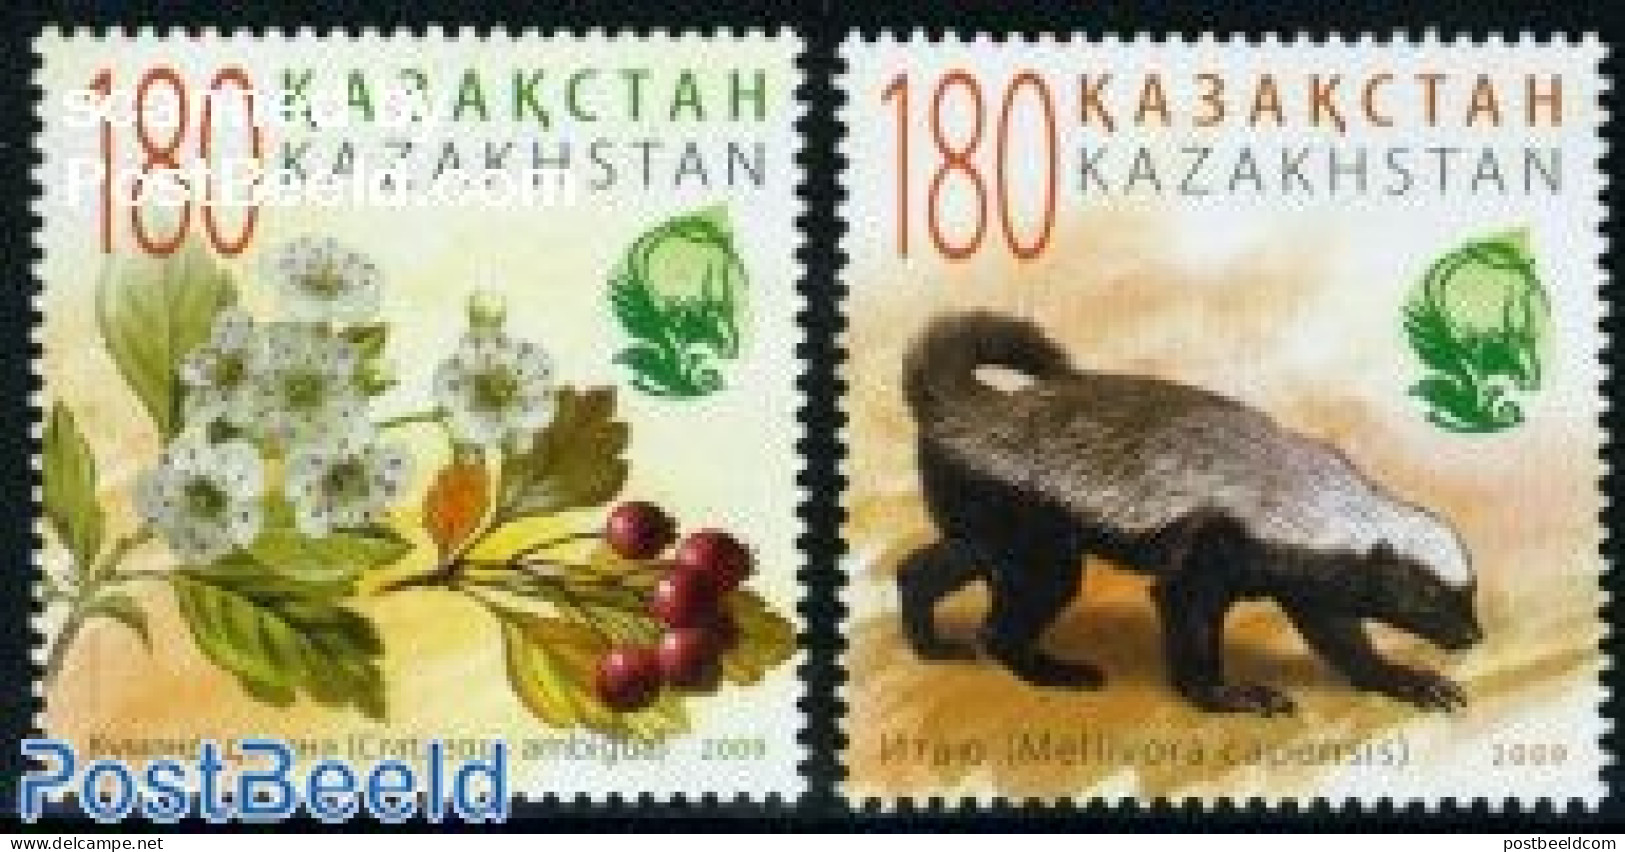 Kazakhstan 2009 Flora & Fauna 2v, Mint NH, Nature - Animals (others & Mixed) - Flowers & Plants - Kazajstán